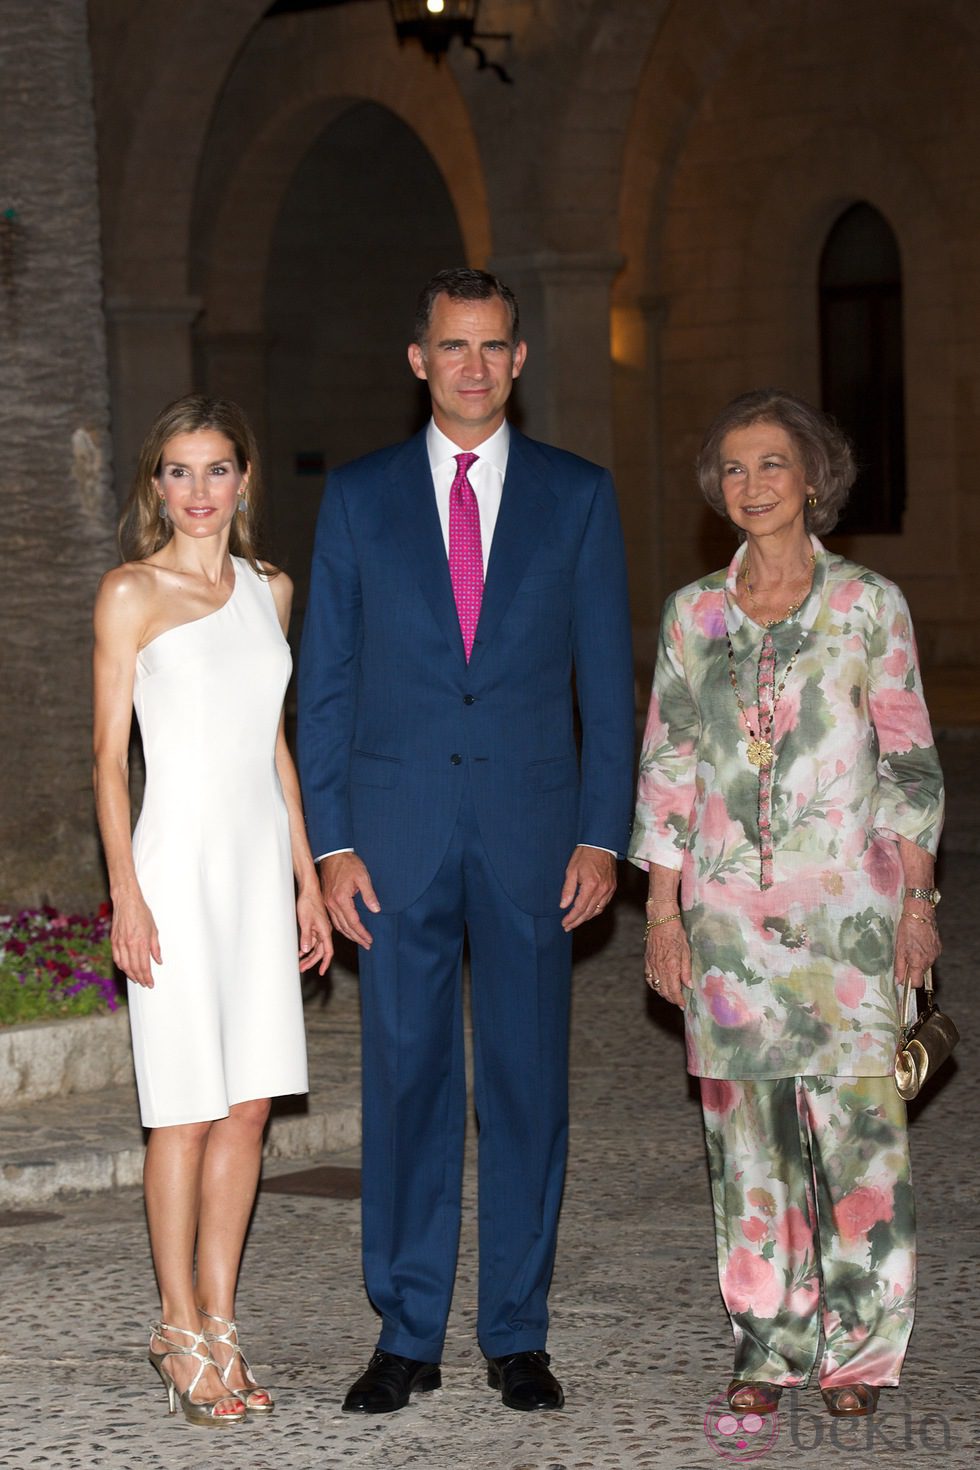 Los reyes Felipe y Letizia junto a la reina Sofía en la recepción de Mallorca